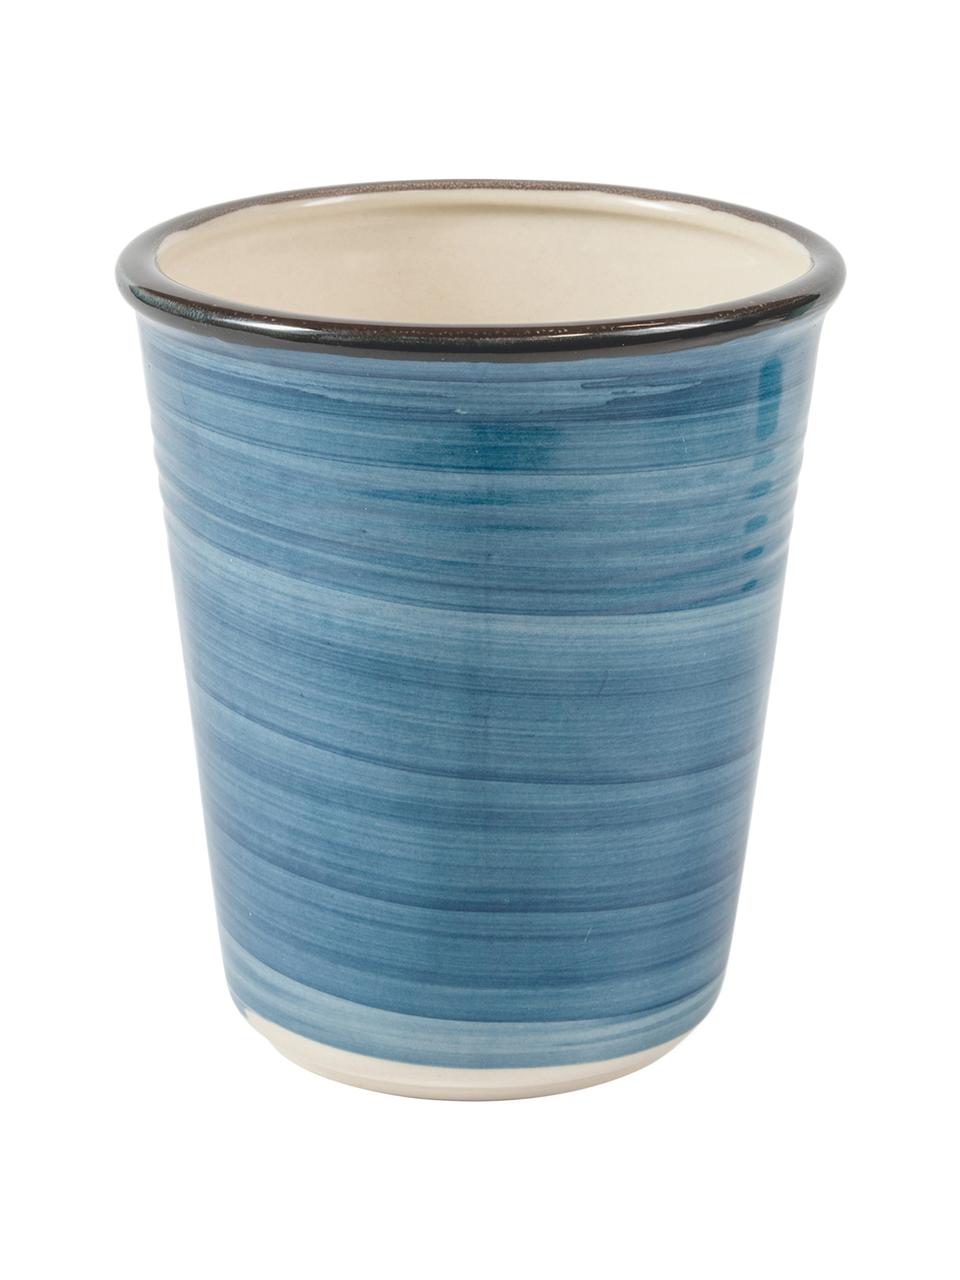 Mug artisanal bleu Baita, 6 élém., Grès cérame (dolomie dure), peint à la main, Tons bleus, Ø 9 x haut. 11 cm, 350 ml